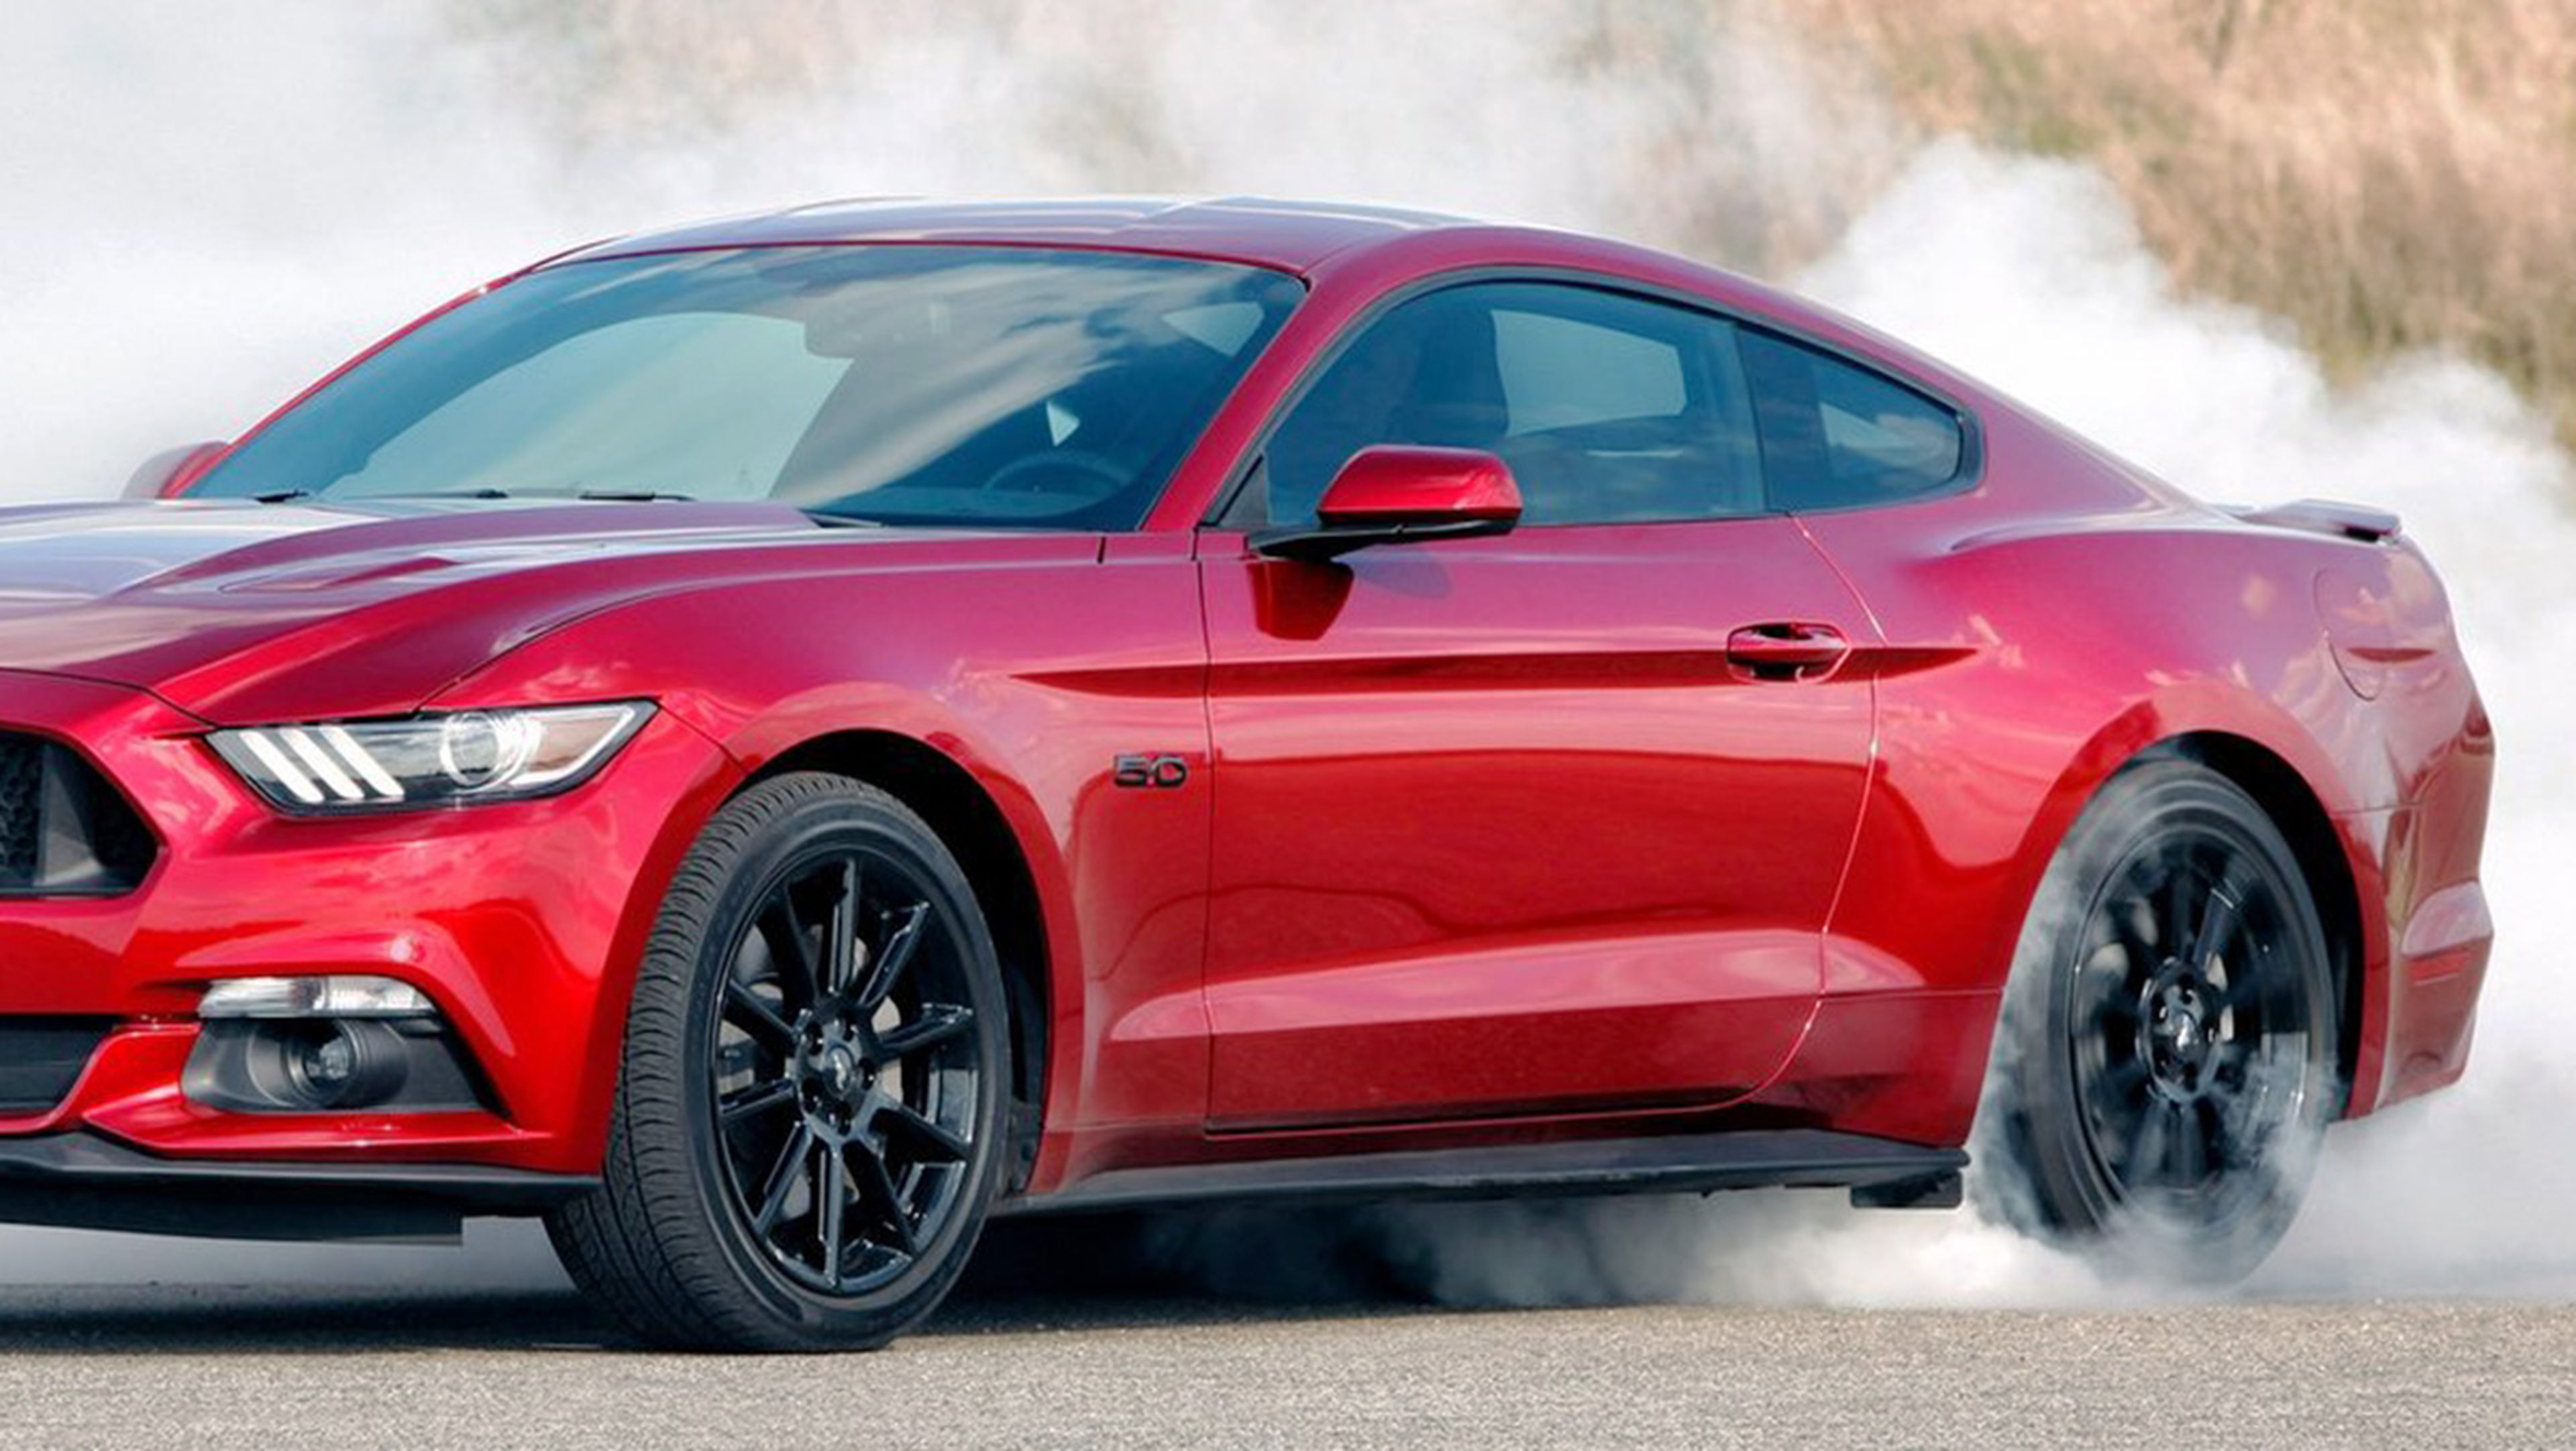 El Ford Mustang 2018 podría llevar un cambio automático de 10 marchas